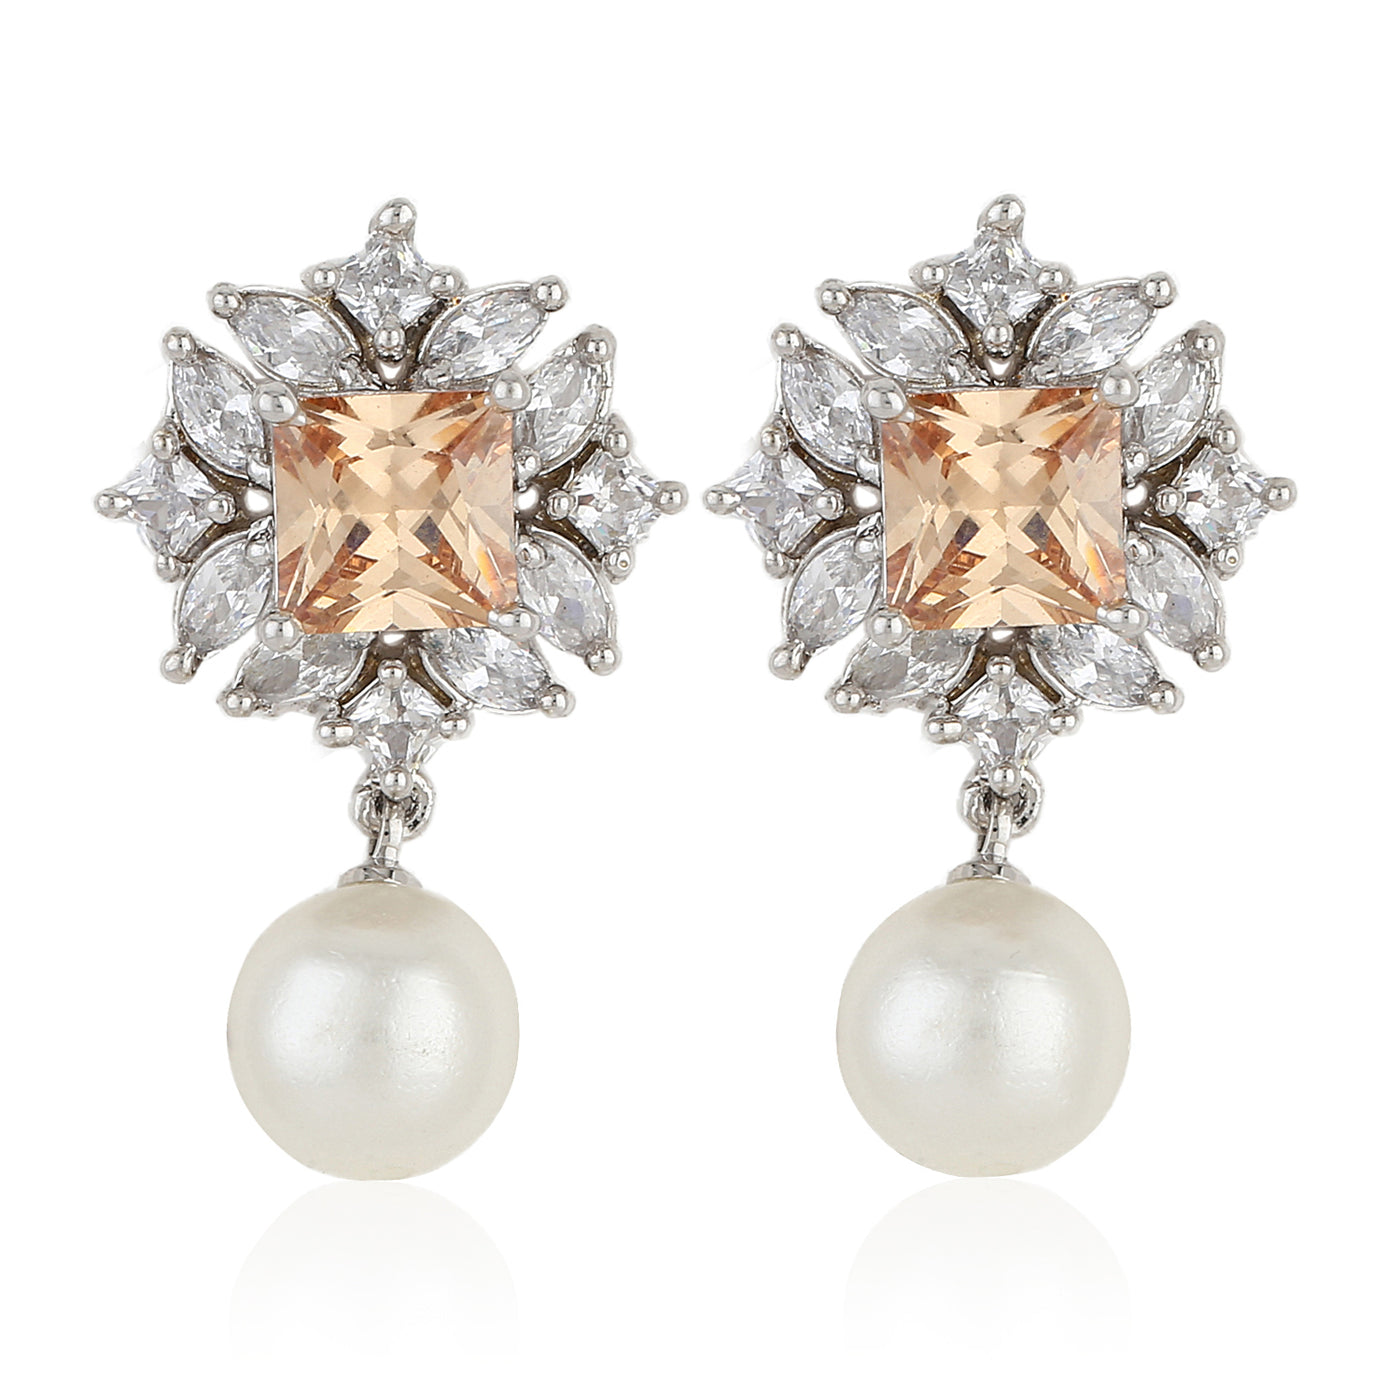 Diamante Fancy Earrings Set